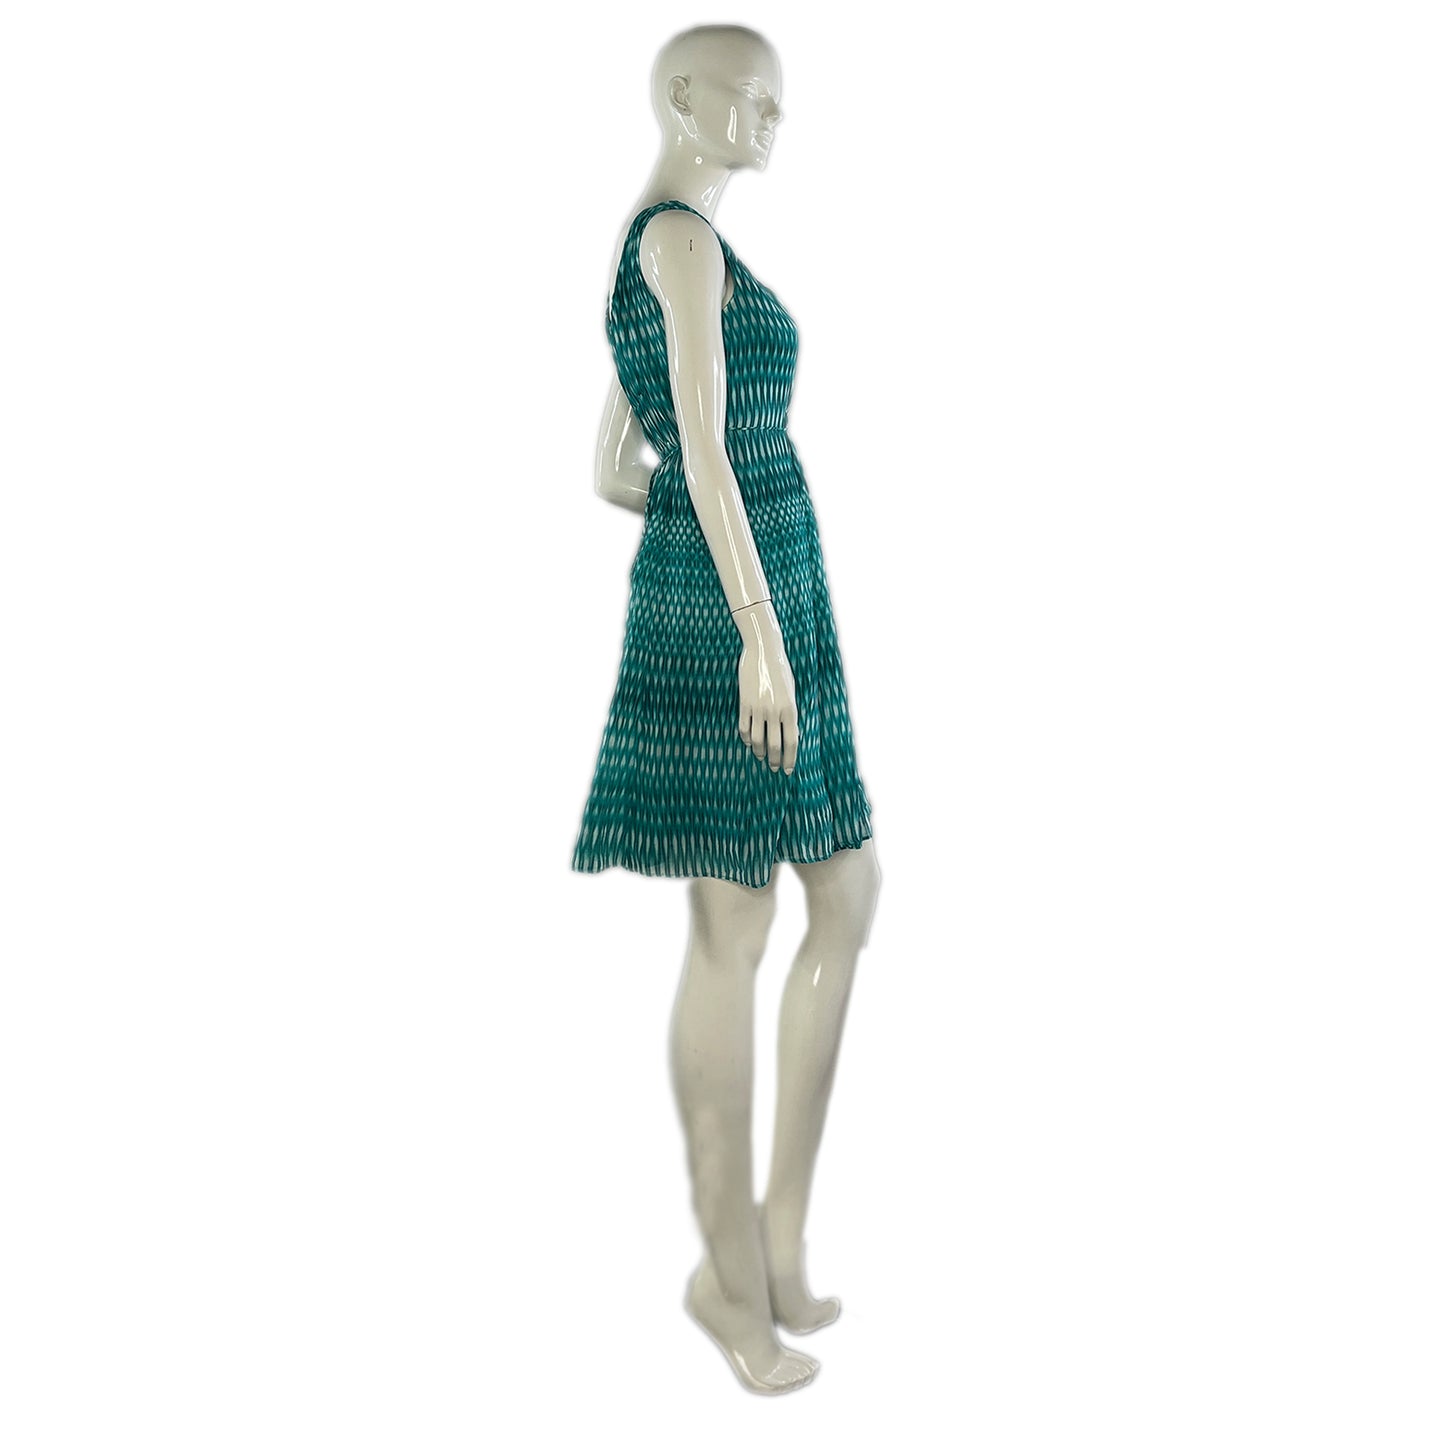 Calvin Klein Sleeveless Teal & White Dress Size 6 SKU 000079-4